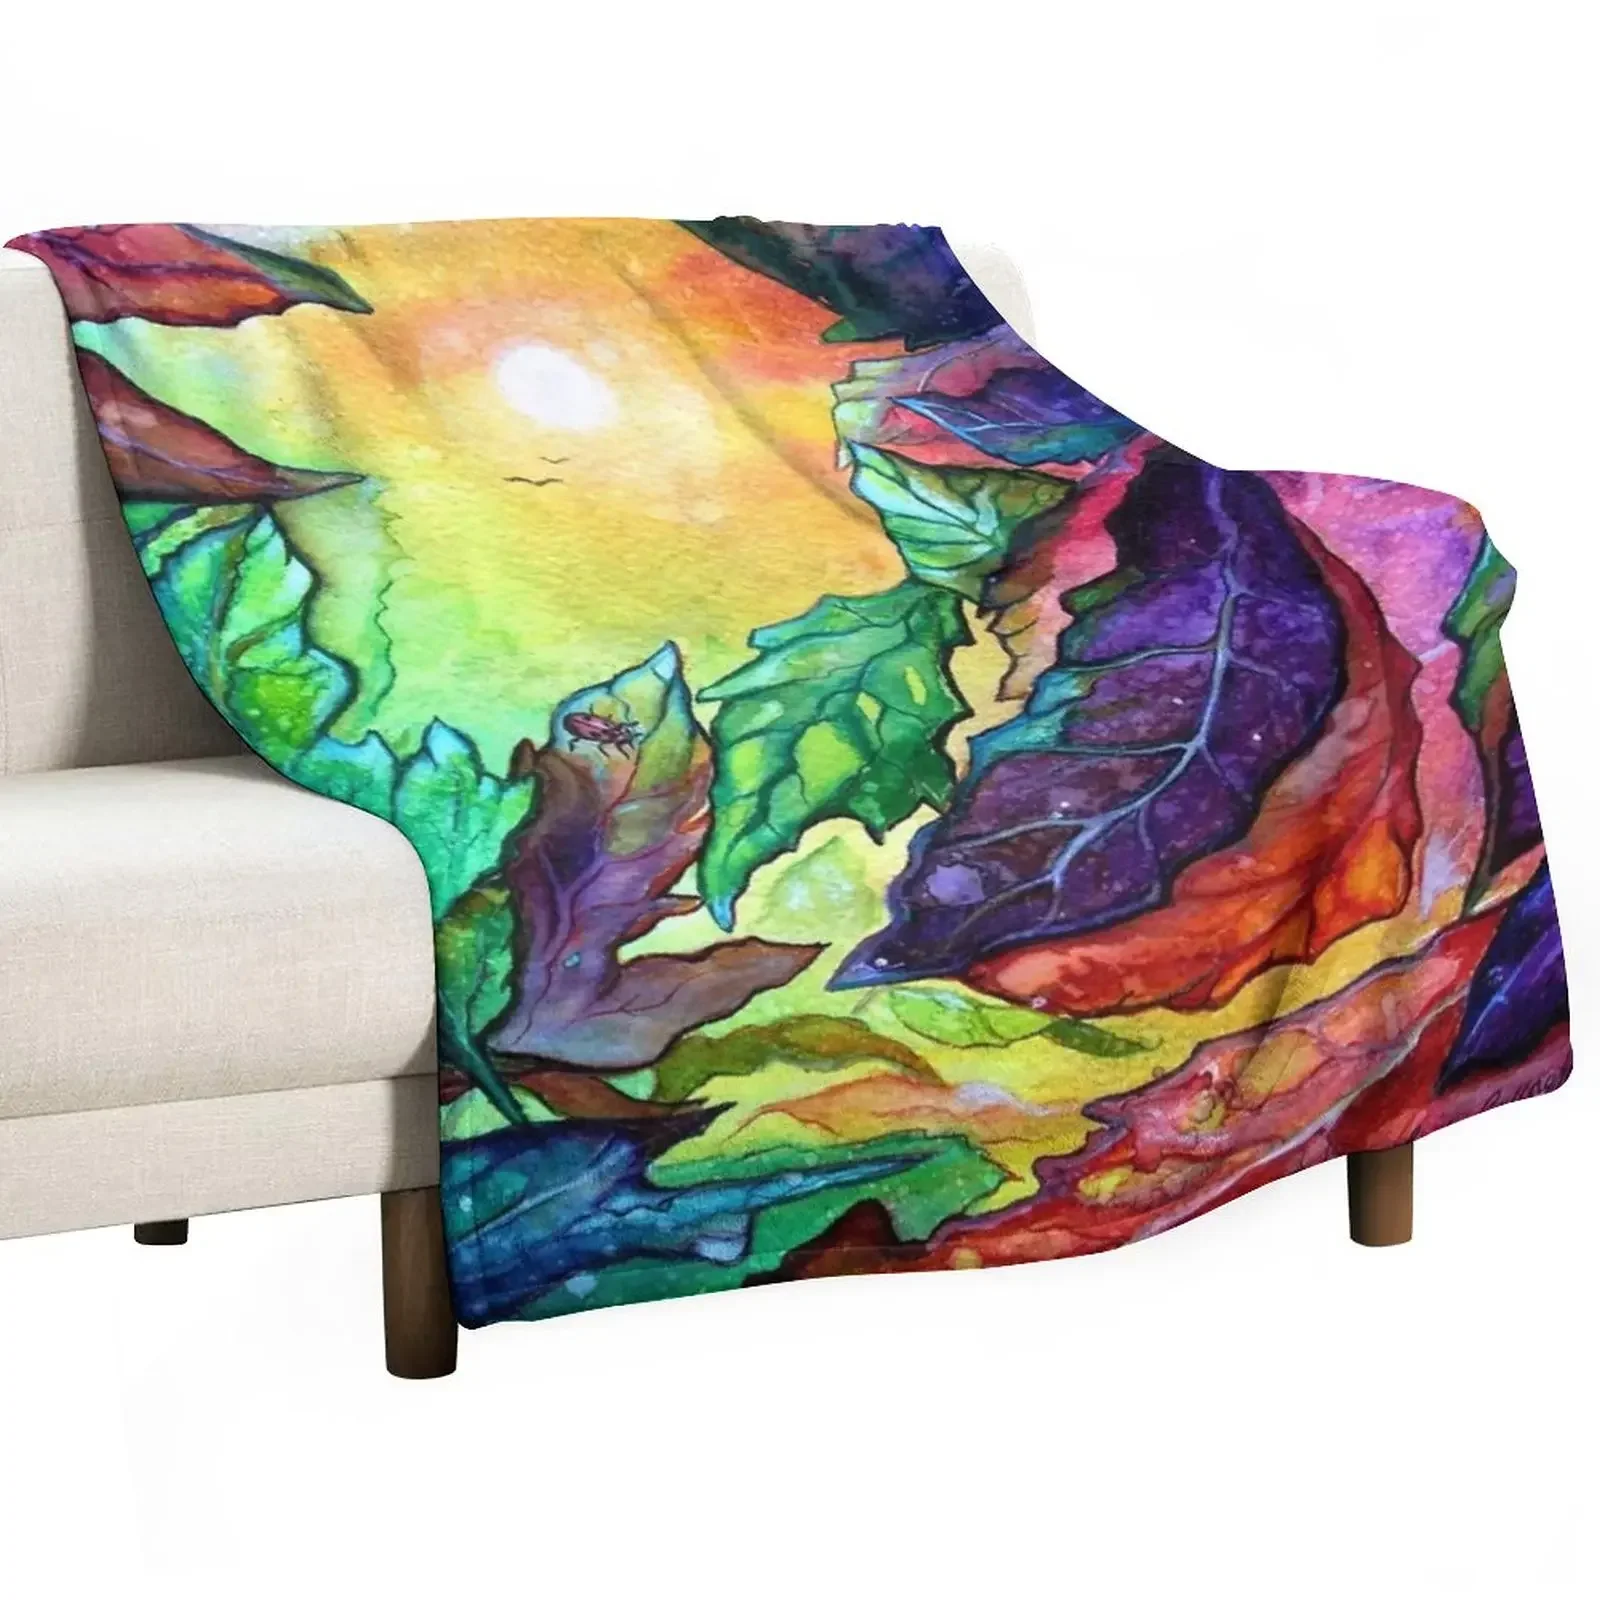 

Одеяло с рисунком солнечных листьев, пушистые мягкие Роскошные брендовые роскошные одеяла